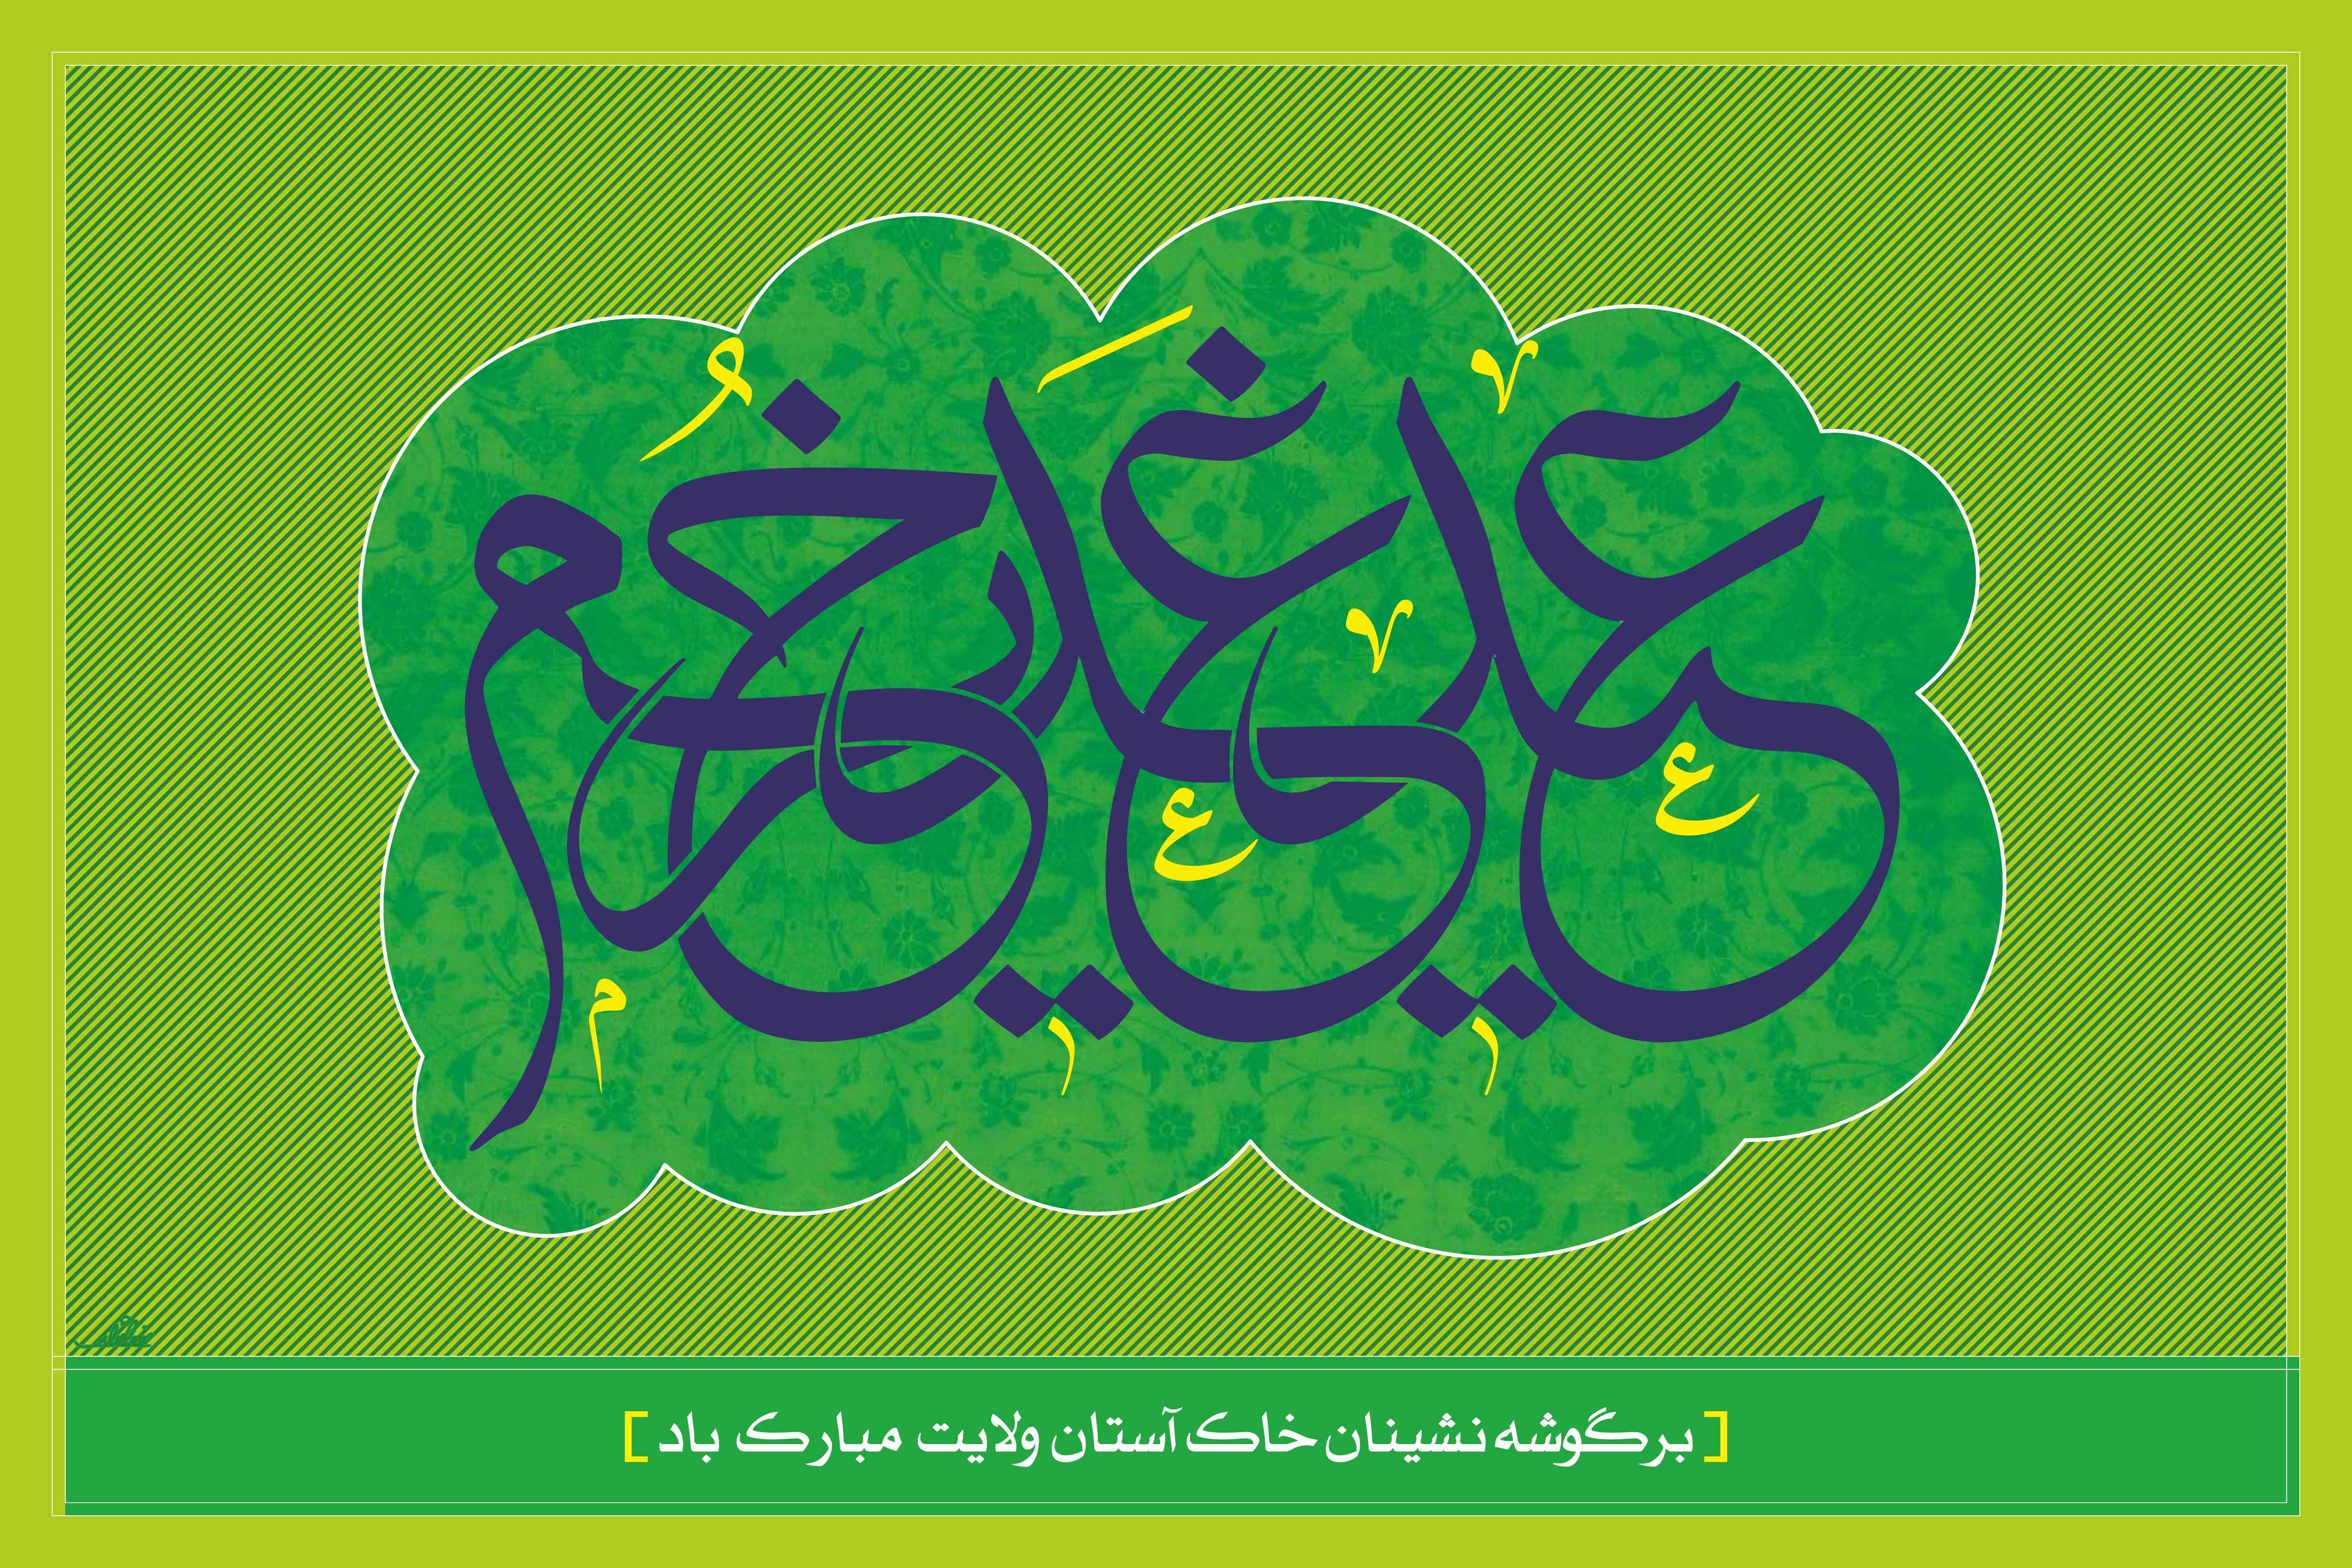 اشعار زیبا ویژه عید غدیر خم